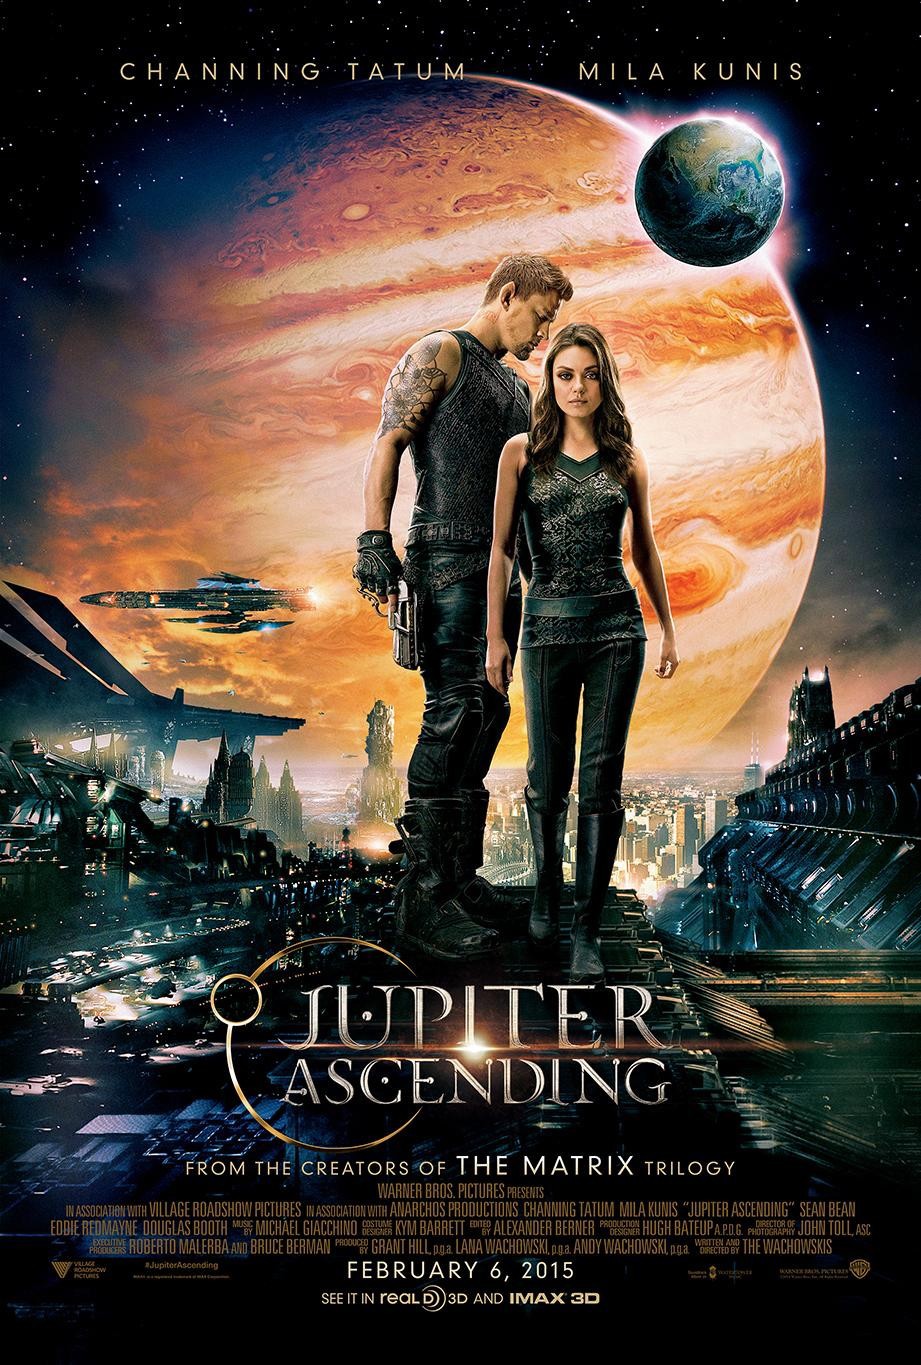 Mila Kunis and Channing Tatum in Jupitere. Pabudimas (2015)